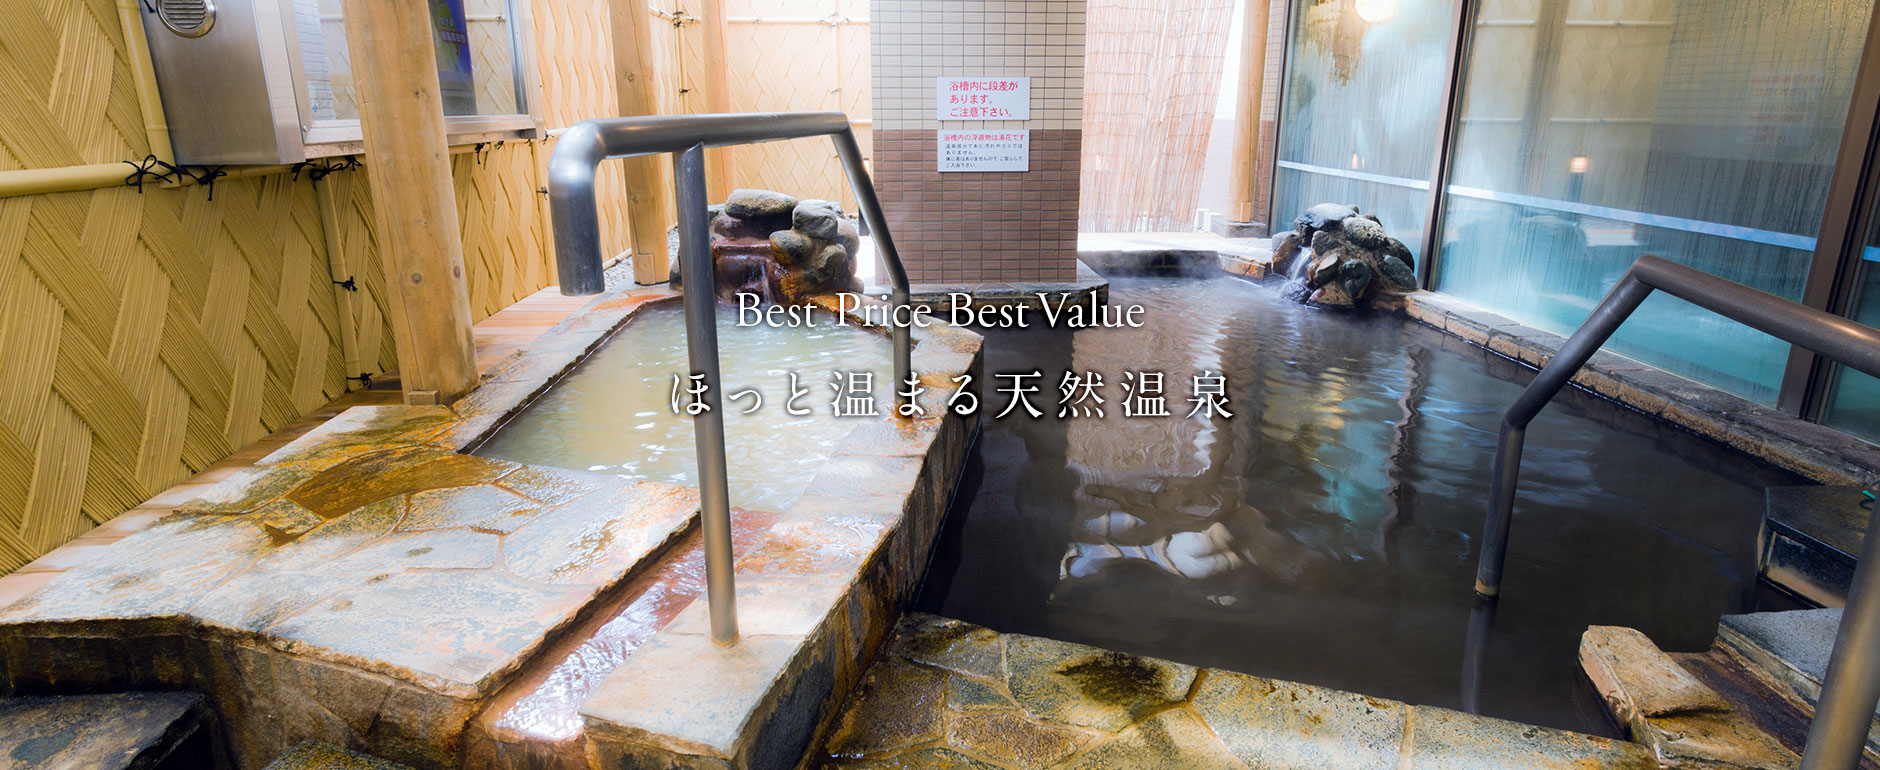 天然温泉 ホテルパコ 函館